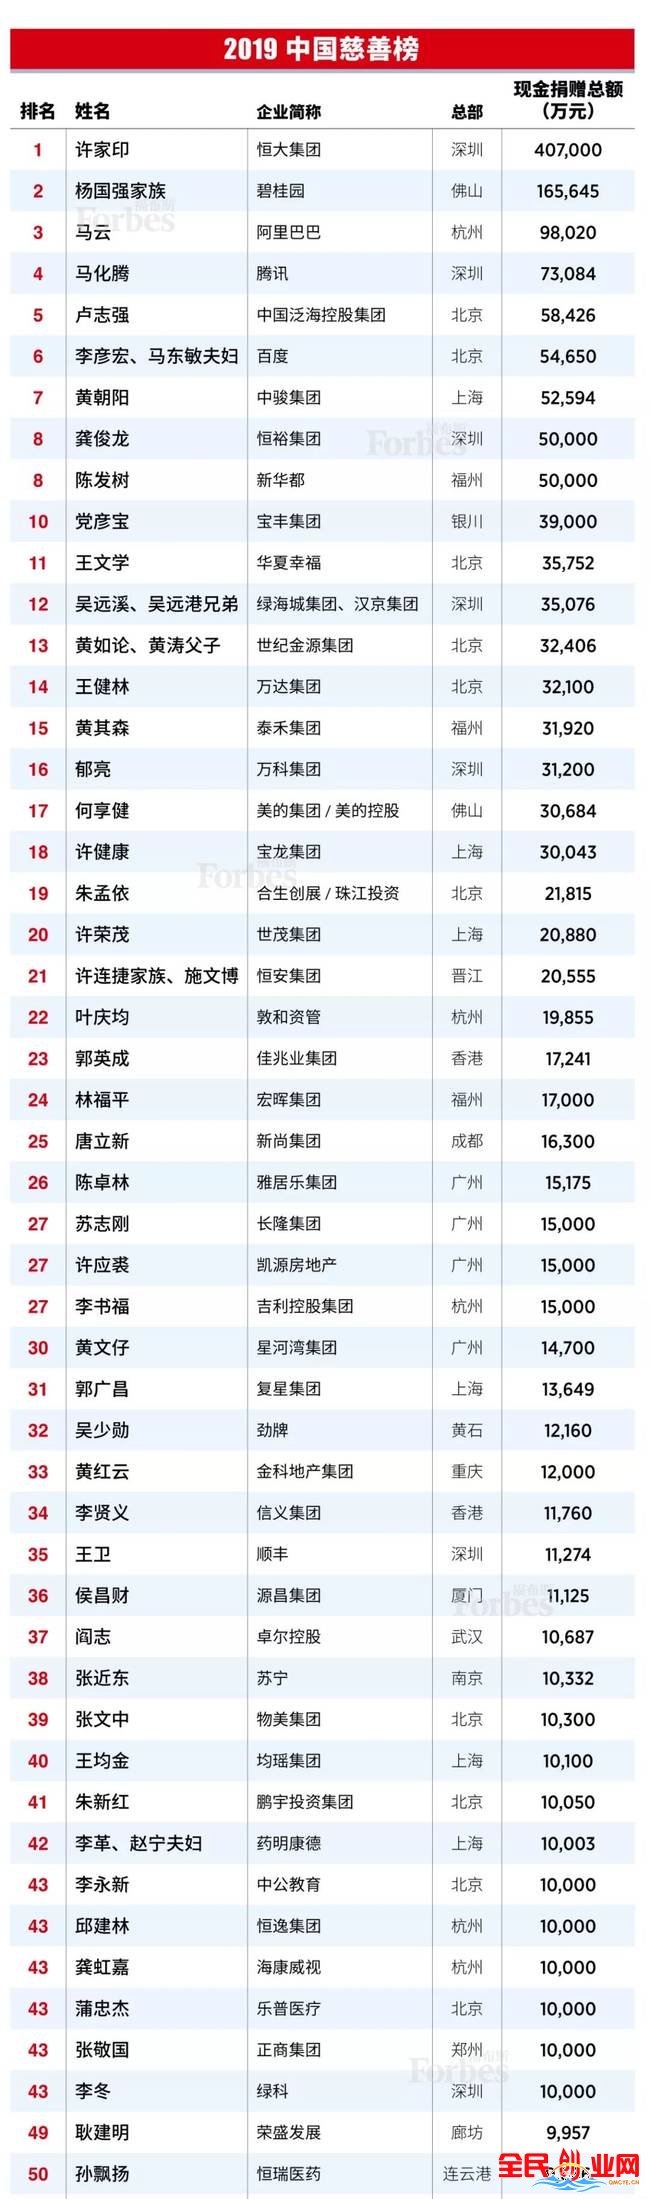 2019中国慈善榜 排名第一的不是马云 竟然是他！